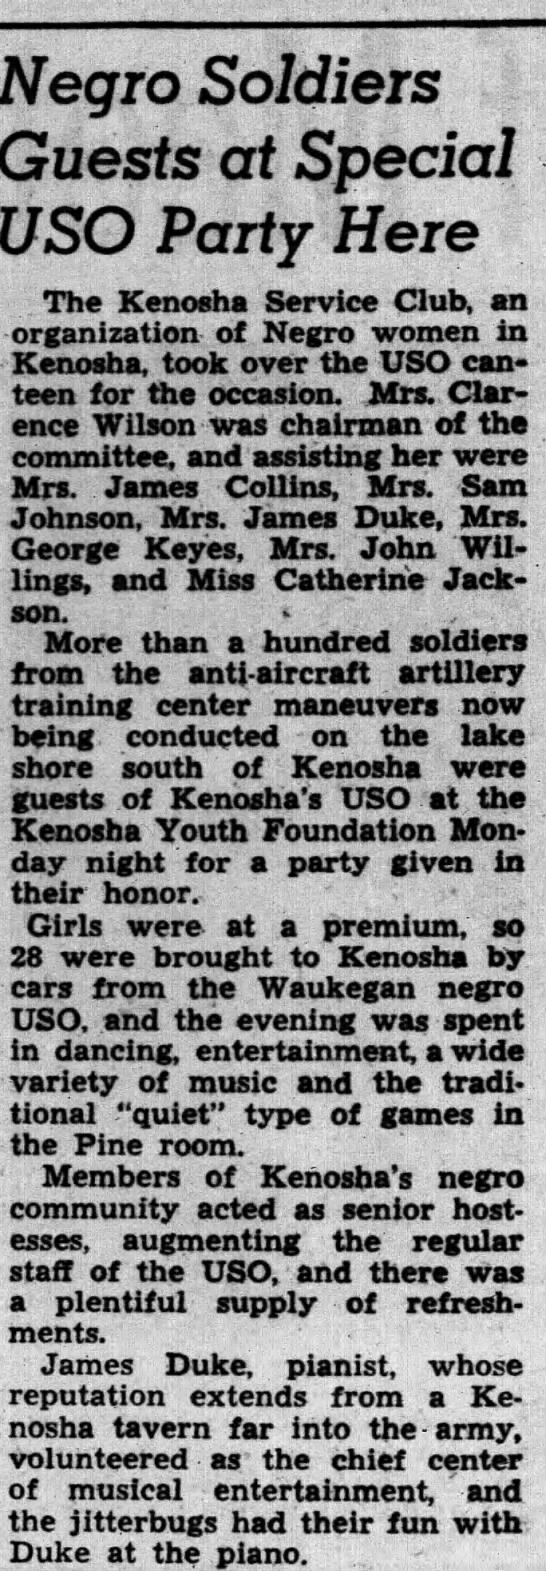 Kenosha 1943 Party - 